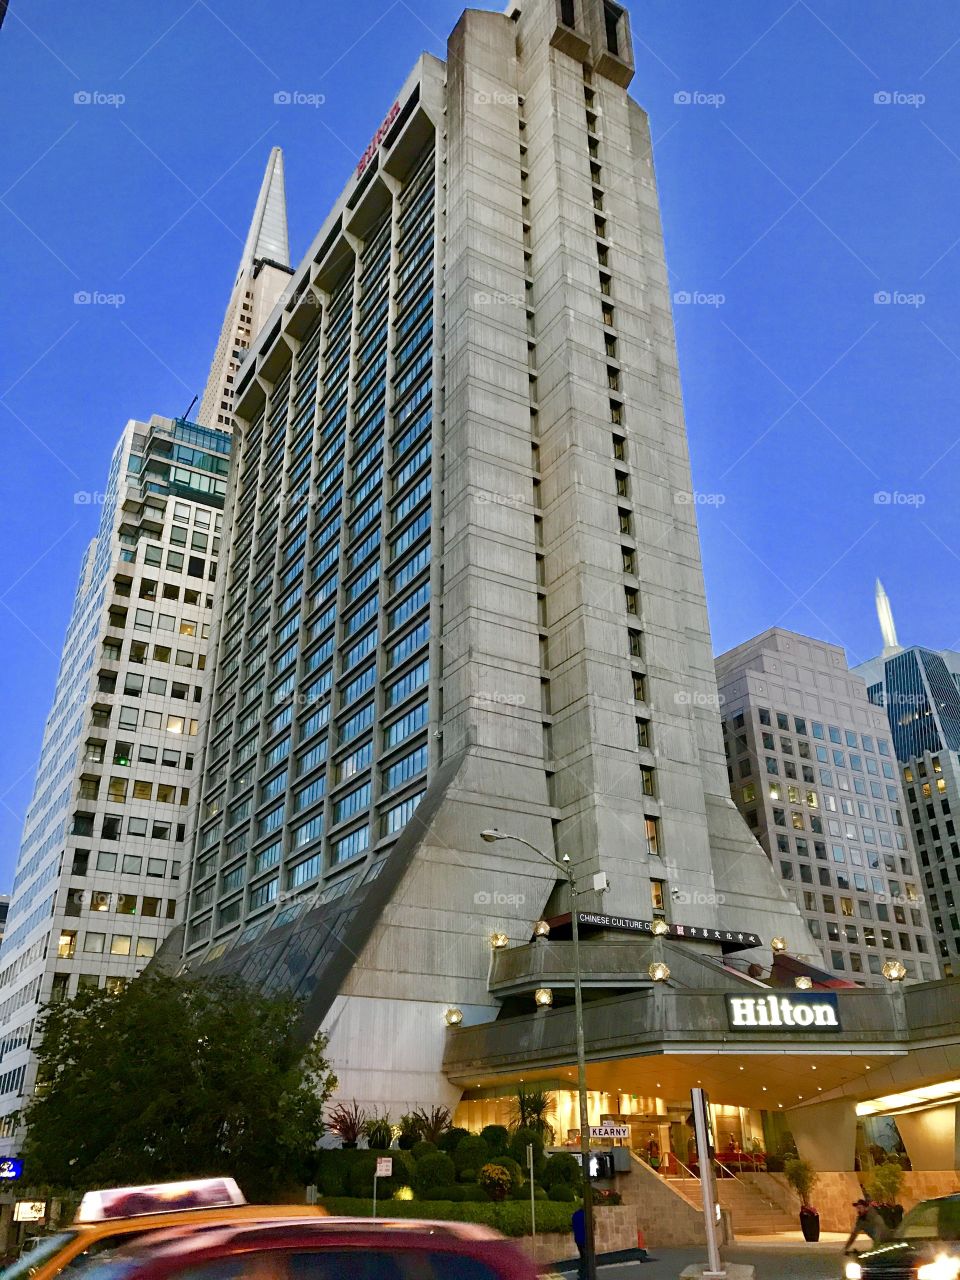 San Francisco Hilton